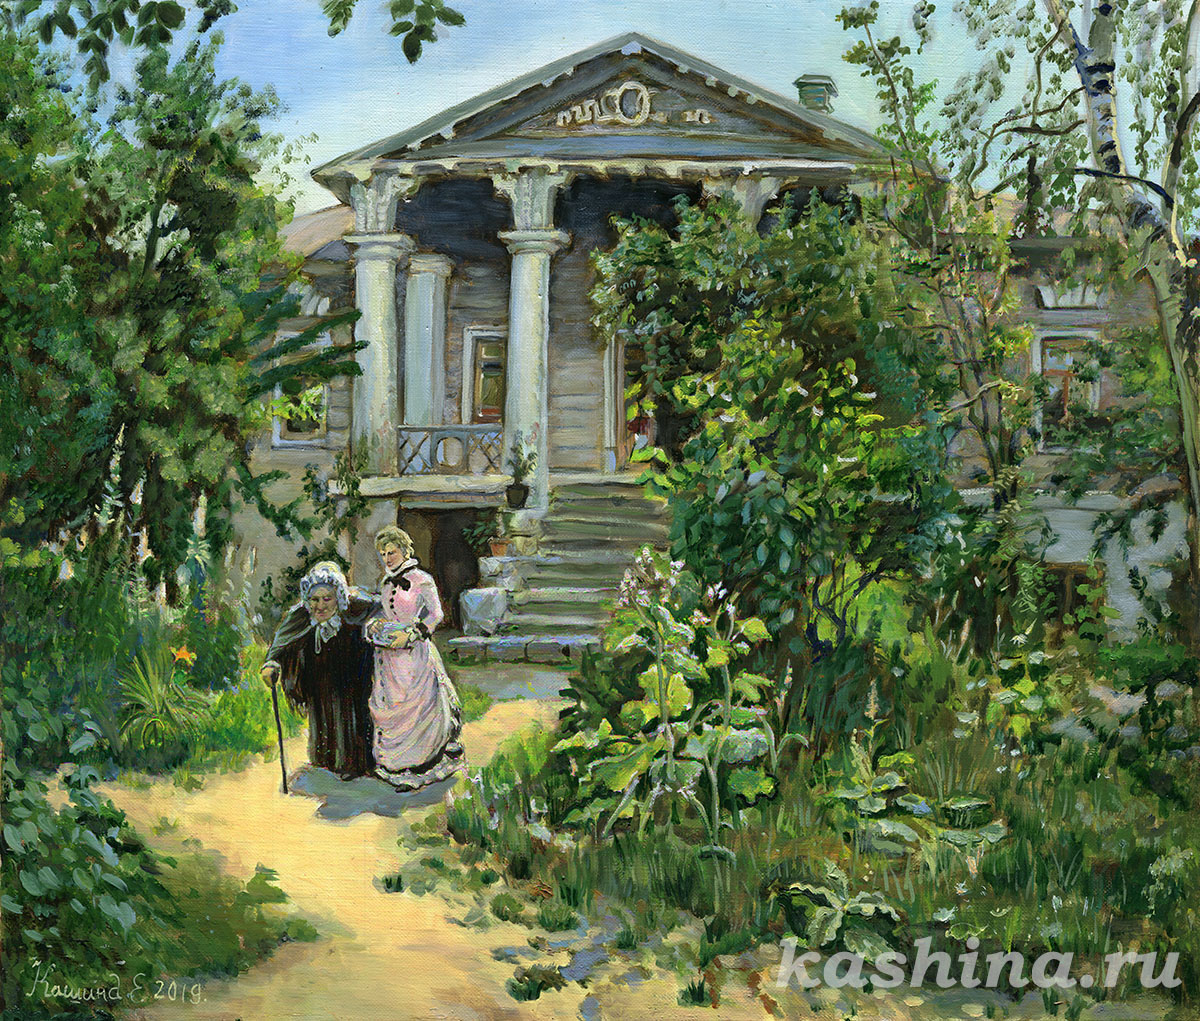 Grandmas Garden; copy of the painting by Polenov, by Evgeniya Kashina